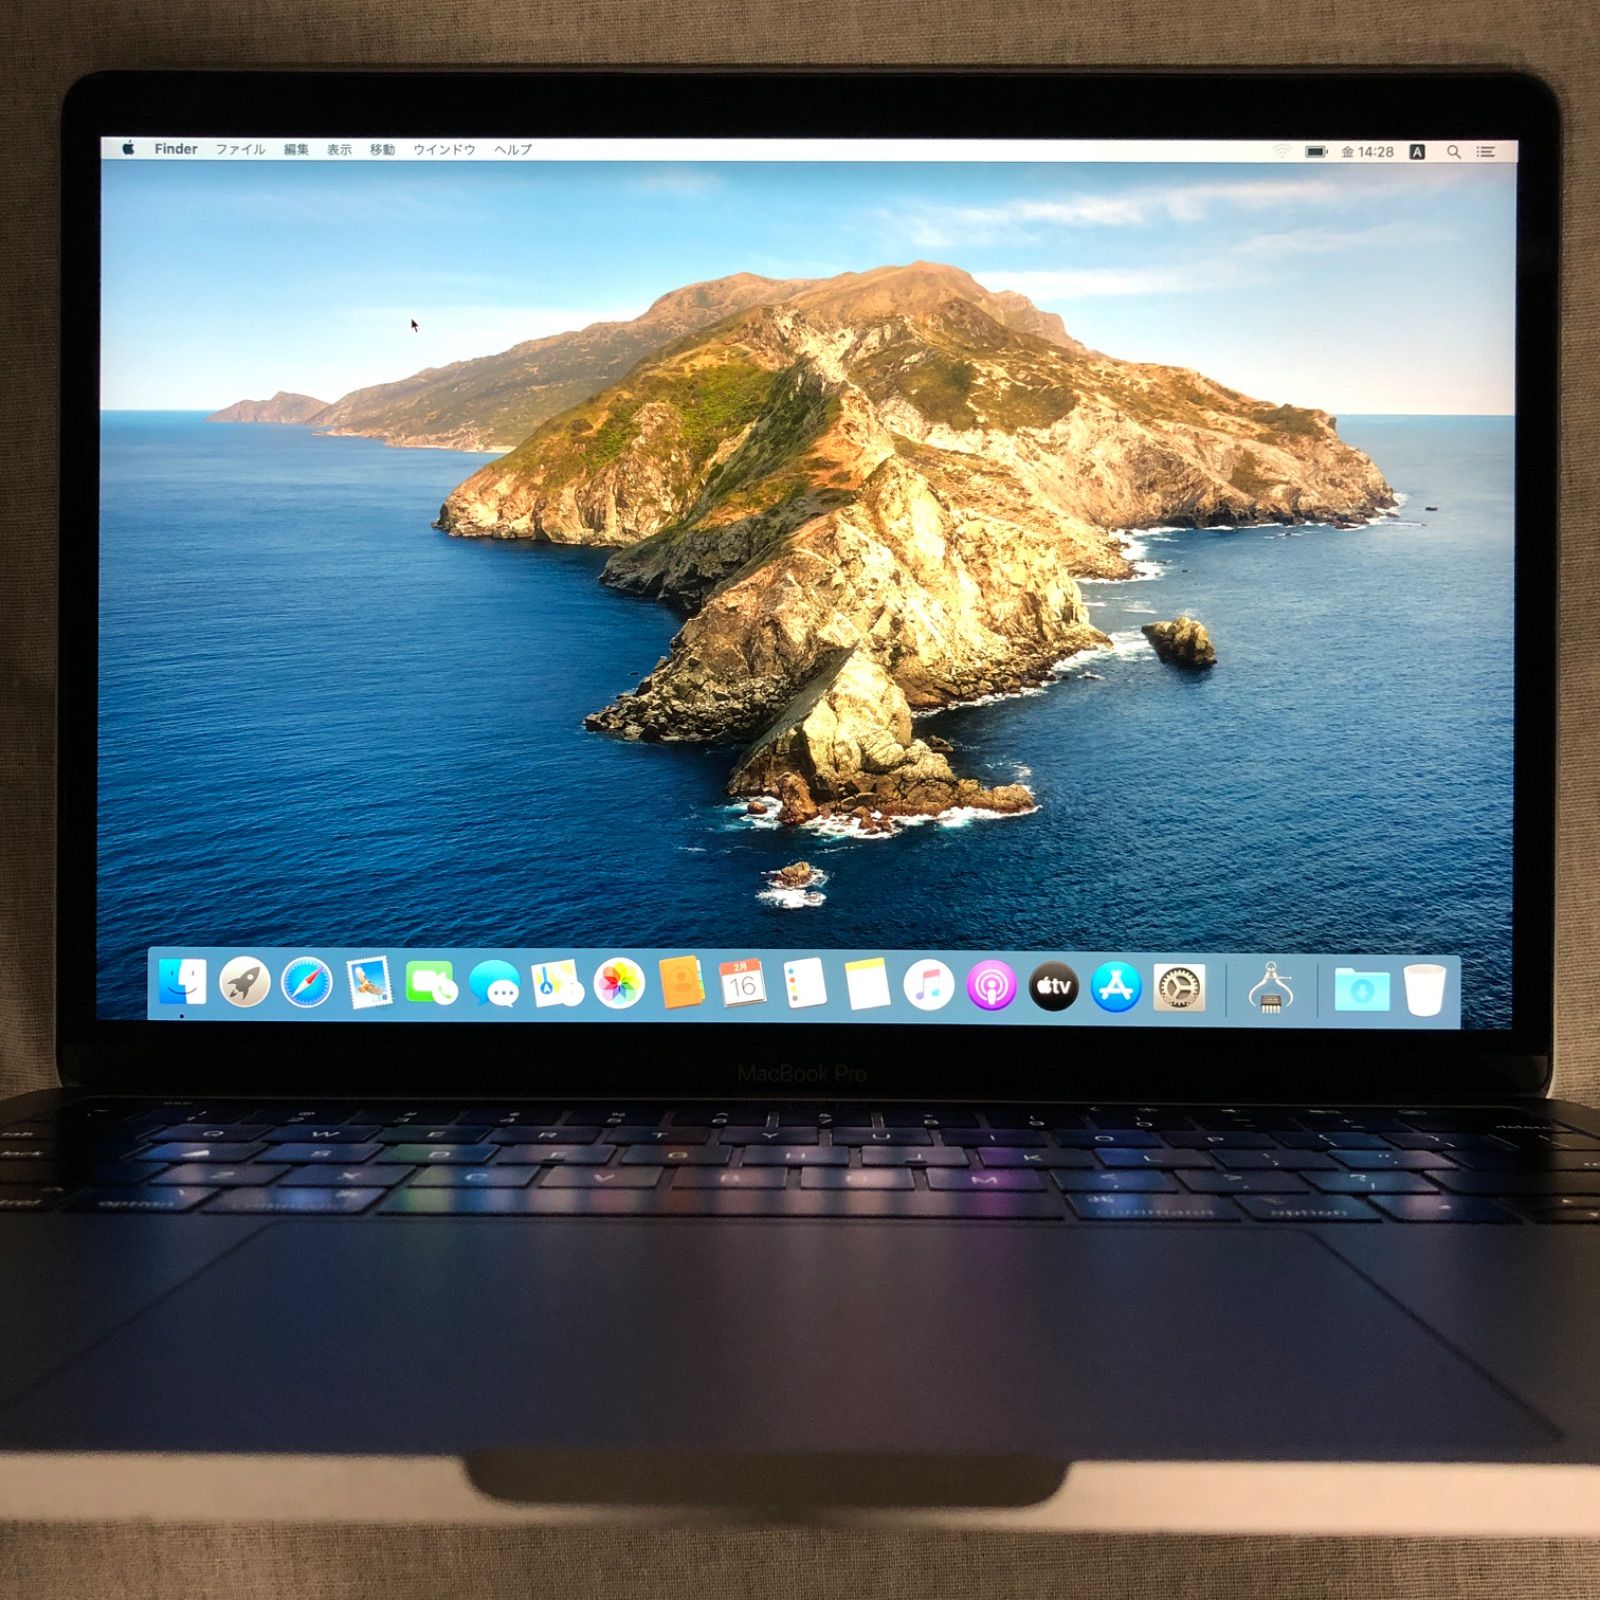 本体のみ】Apple MacBook Pro (13インチ, 2019, Thunderbolt 3ポート x